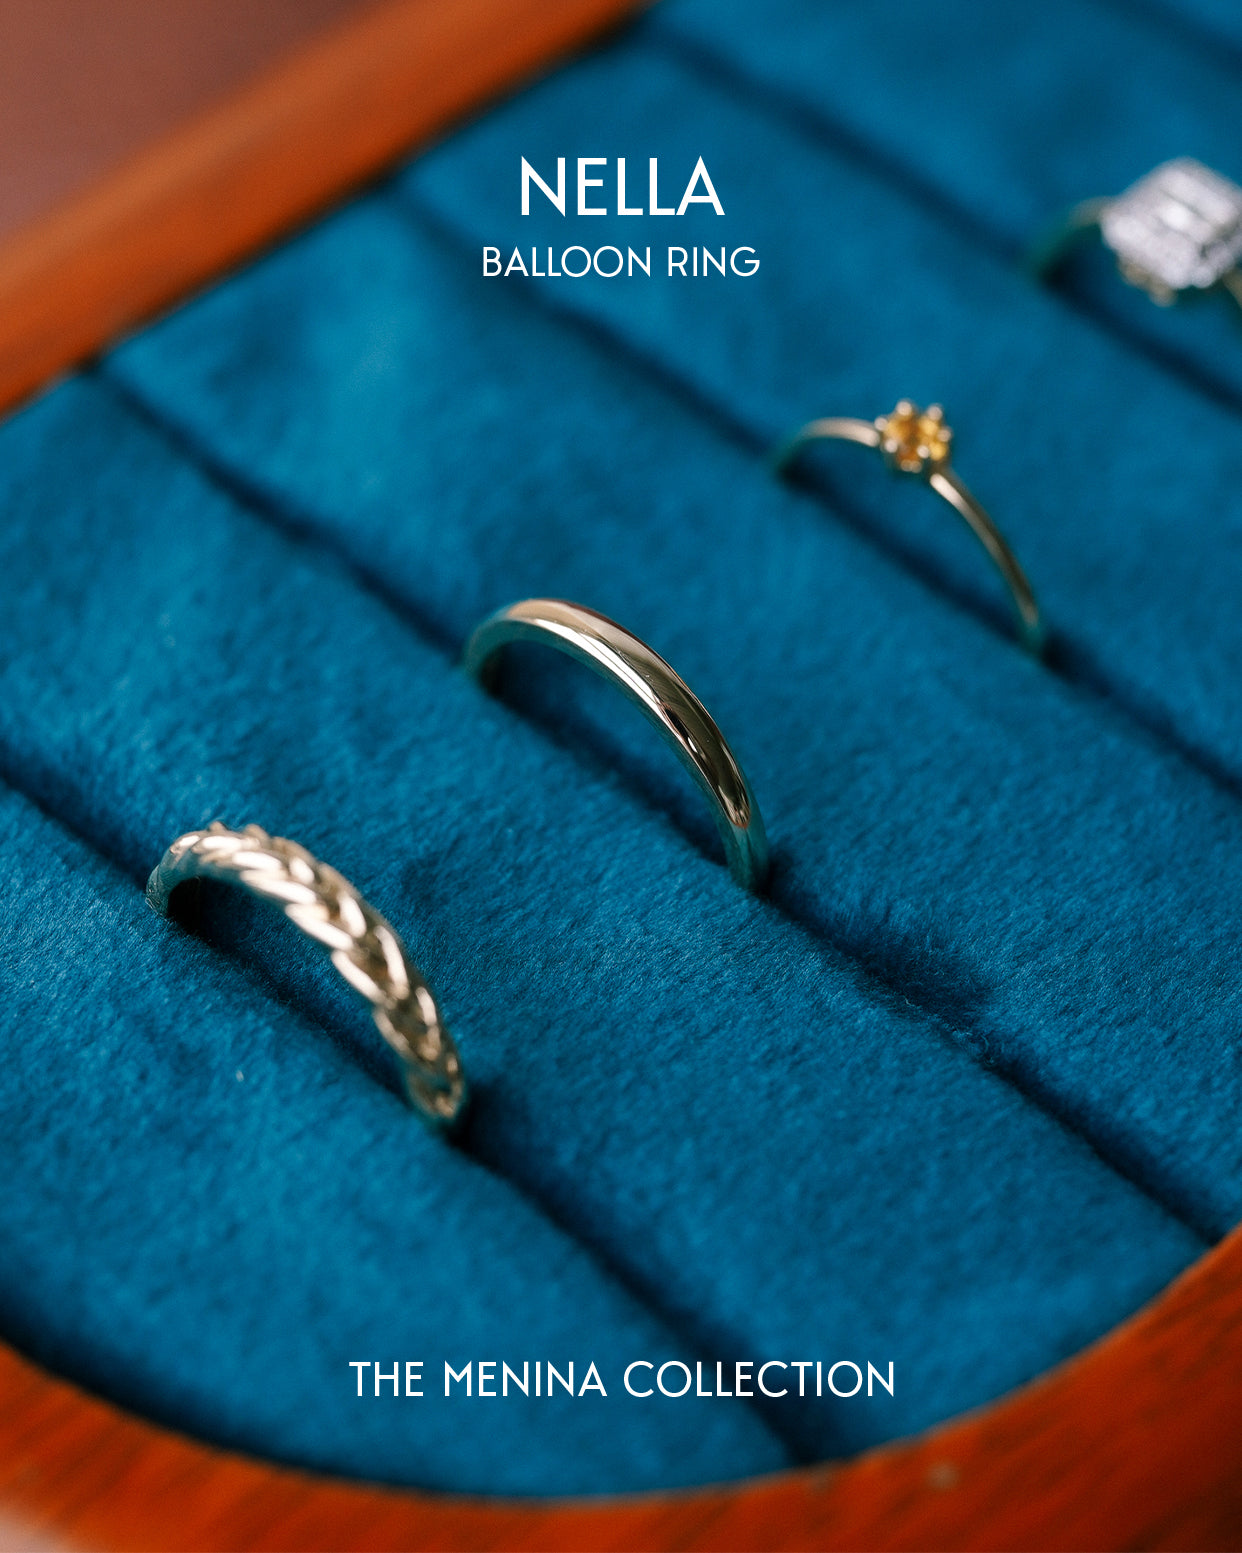 Menina Amsterdam geeft een vervolg aan het verhaal van vintage sieraden.